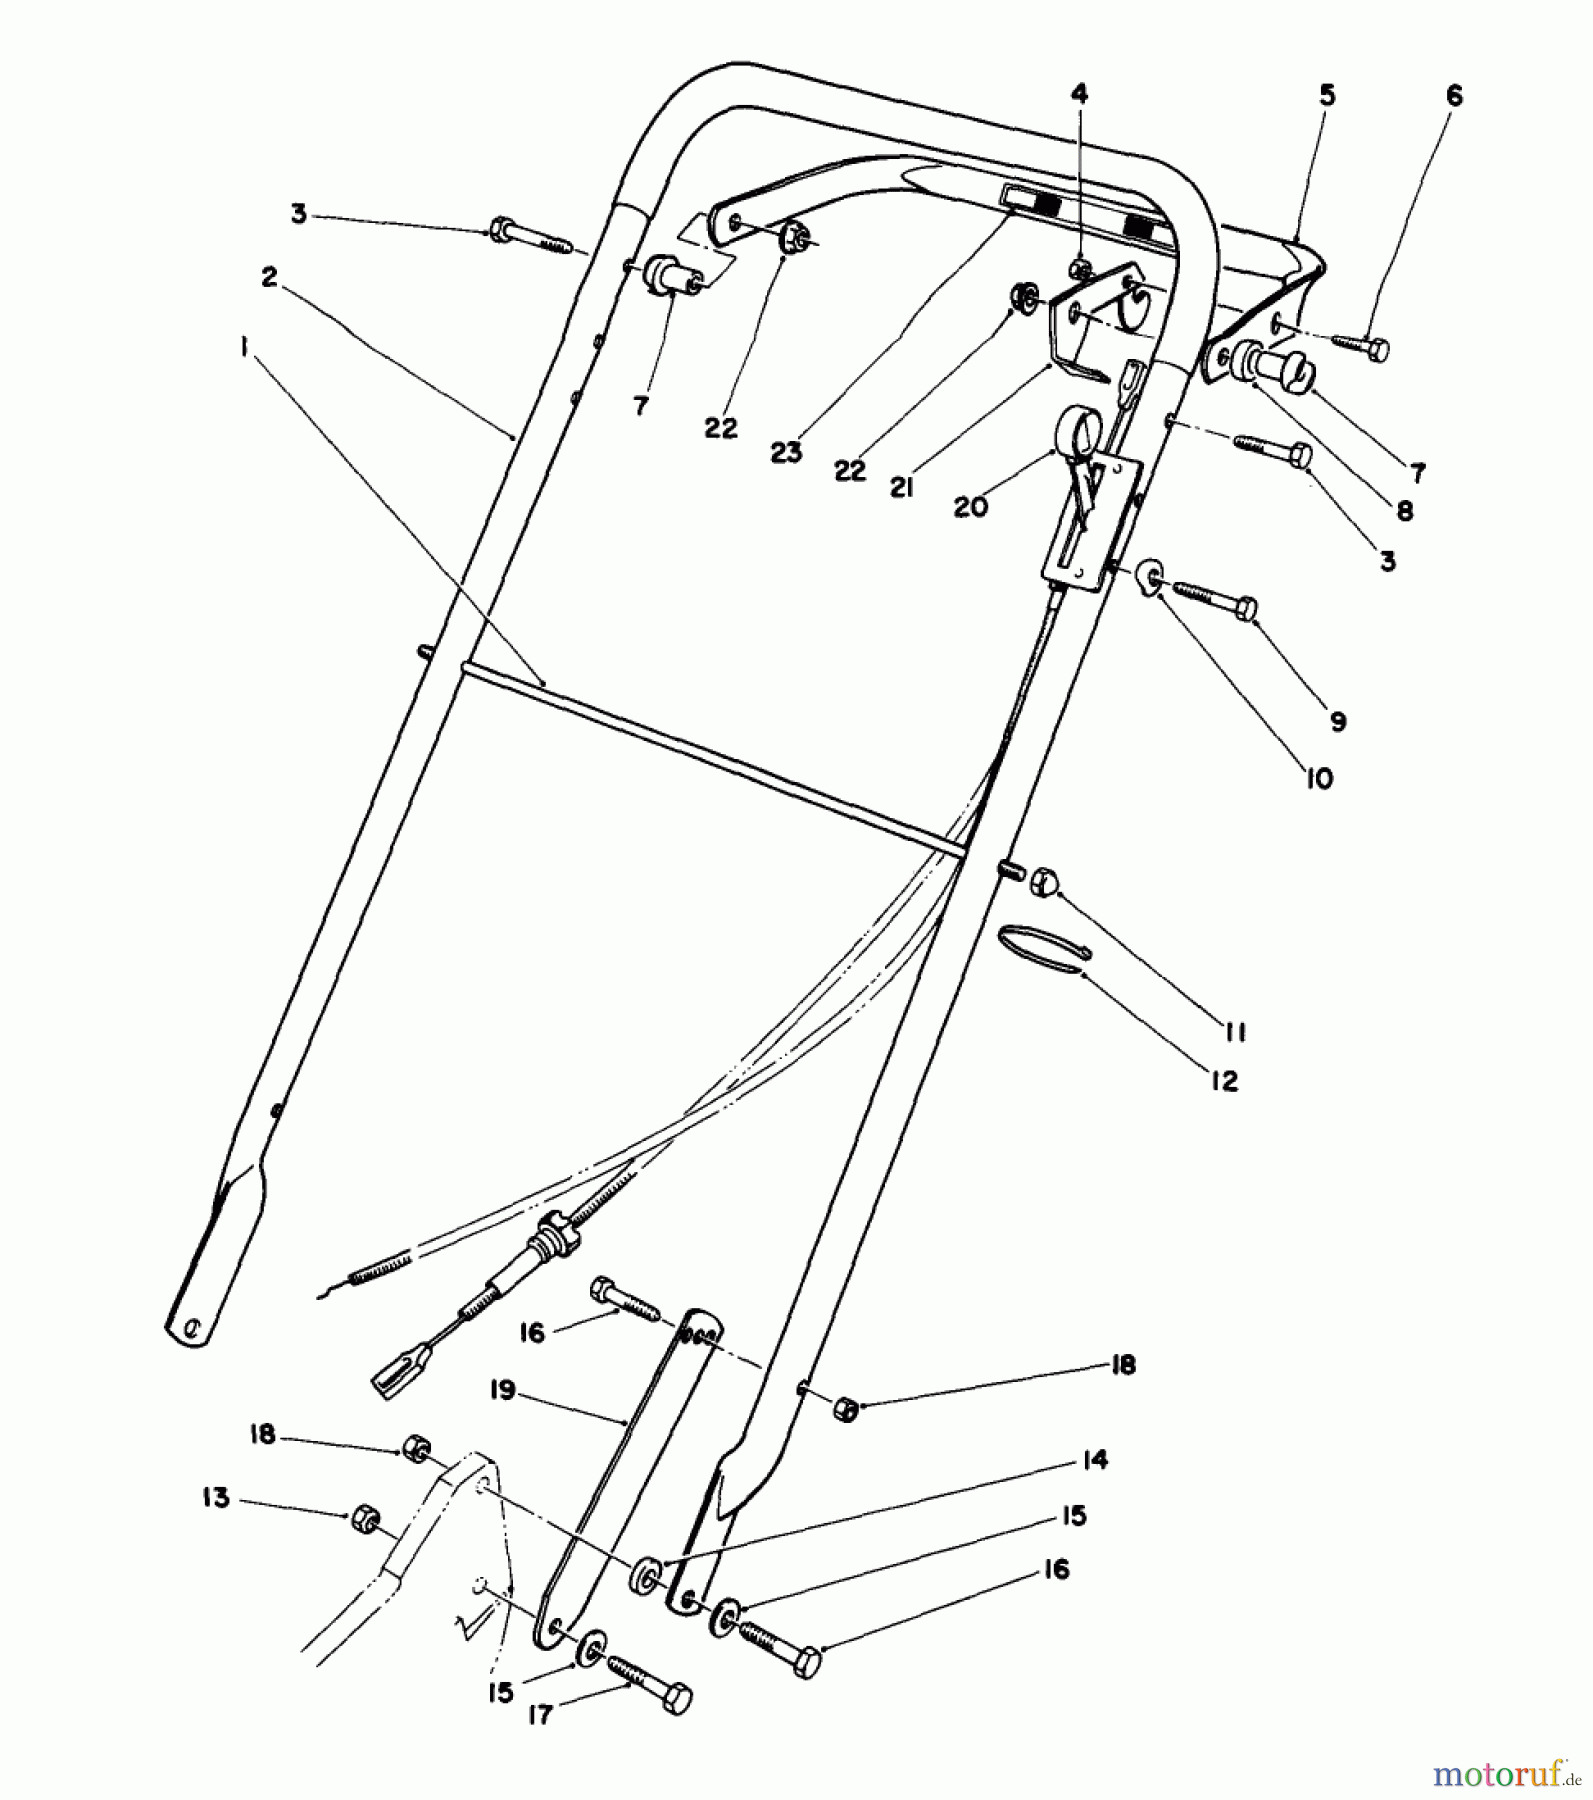  Toro Neu Mowers, Walk-Behind Seite 2 22035C - Toro Lawnmower, 1988 (8000001-8999999) HANDLE ASSEMBLY